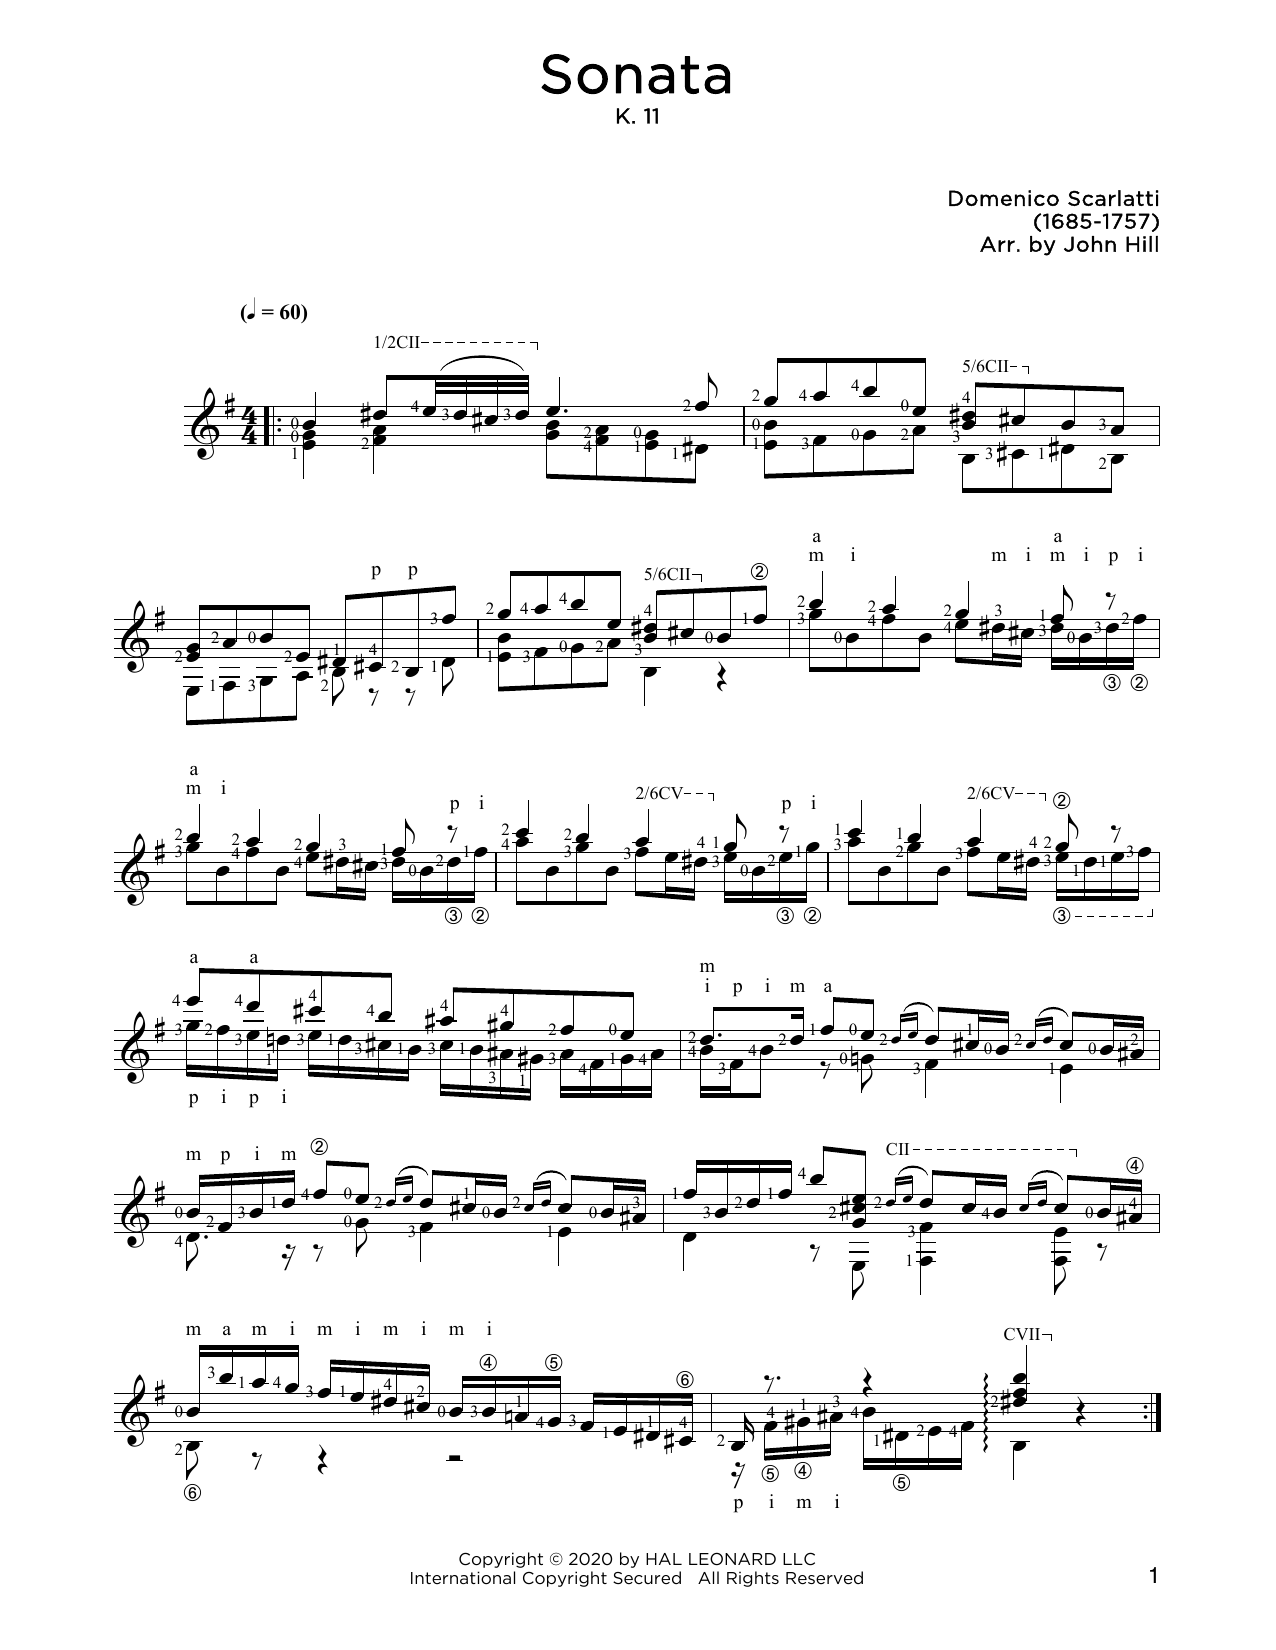 Domenico Scarlatti Sonata, L. 352 Sheet Music Notes & Chords for Solo Guitar - Download or Print PDF